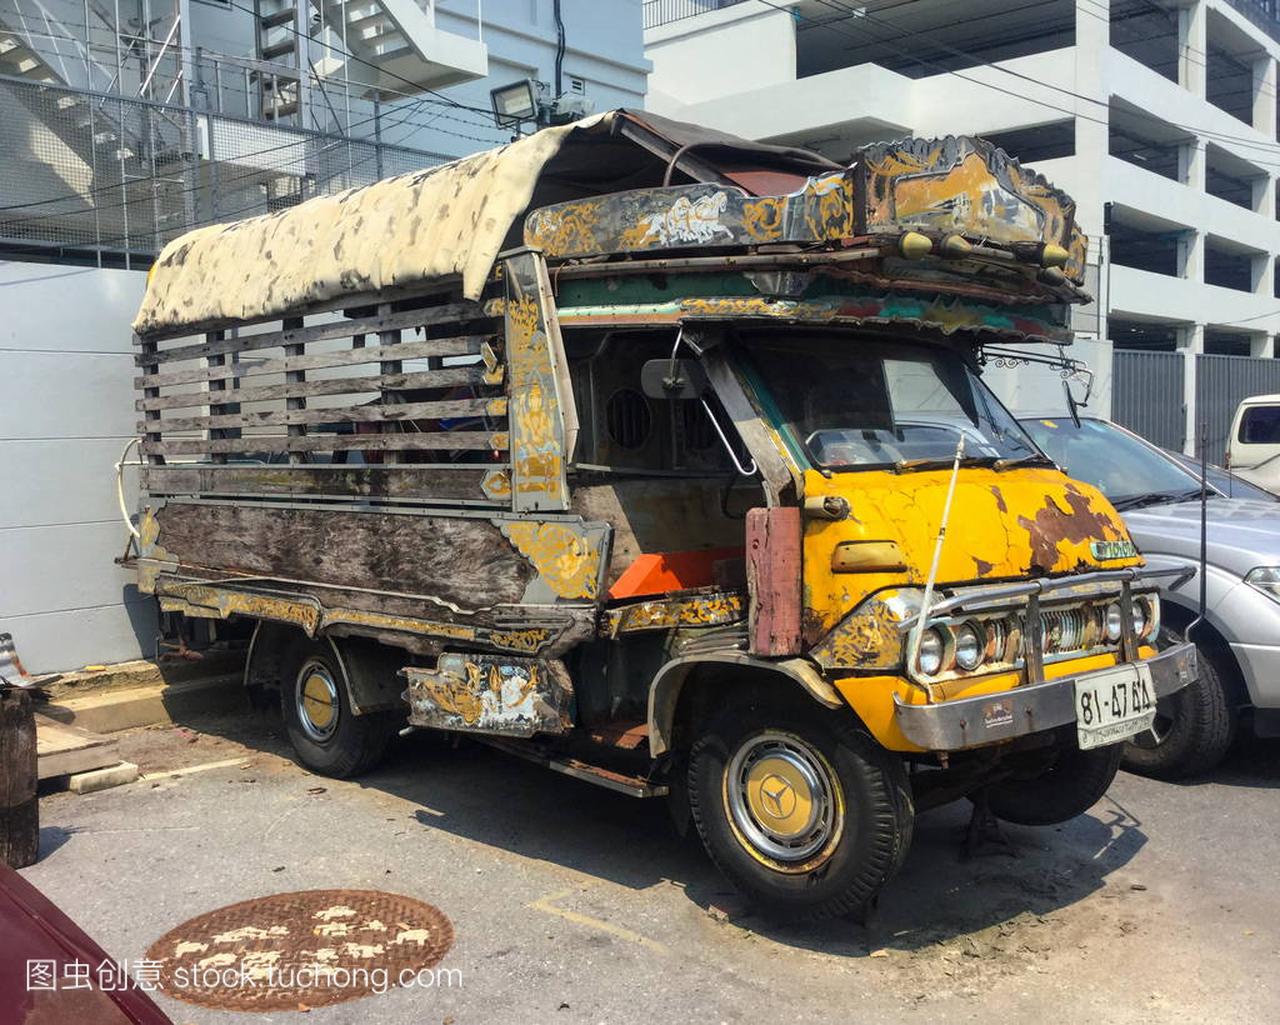 曼谷, 泰国-2018年4月10日: 私人老式汽车丰田